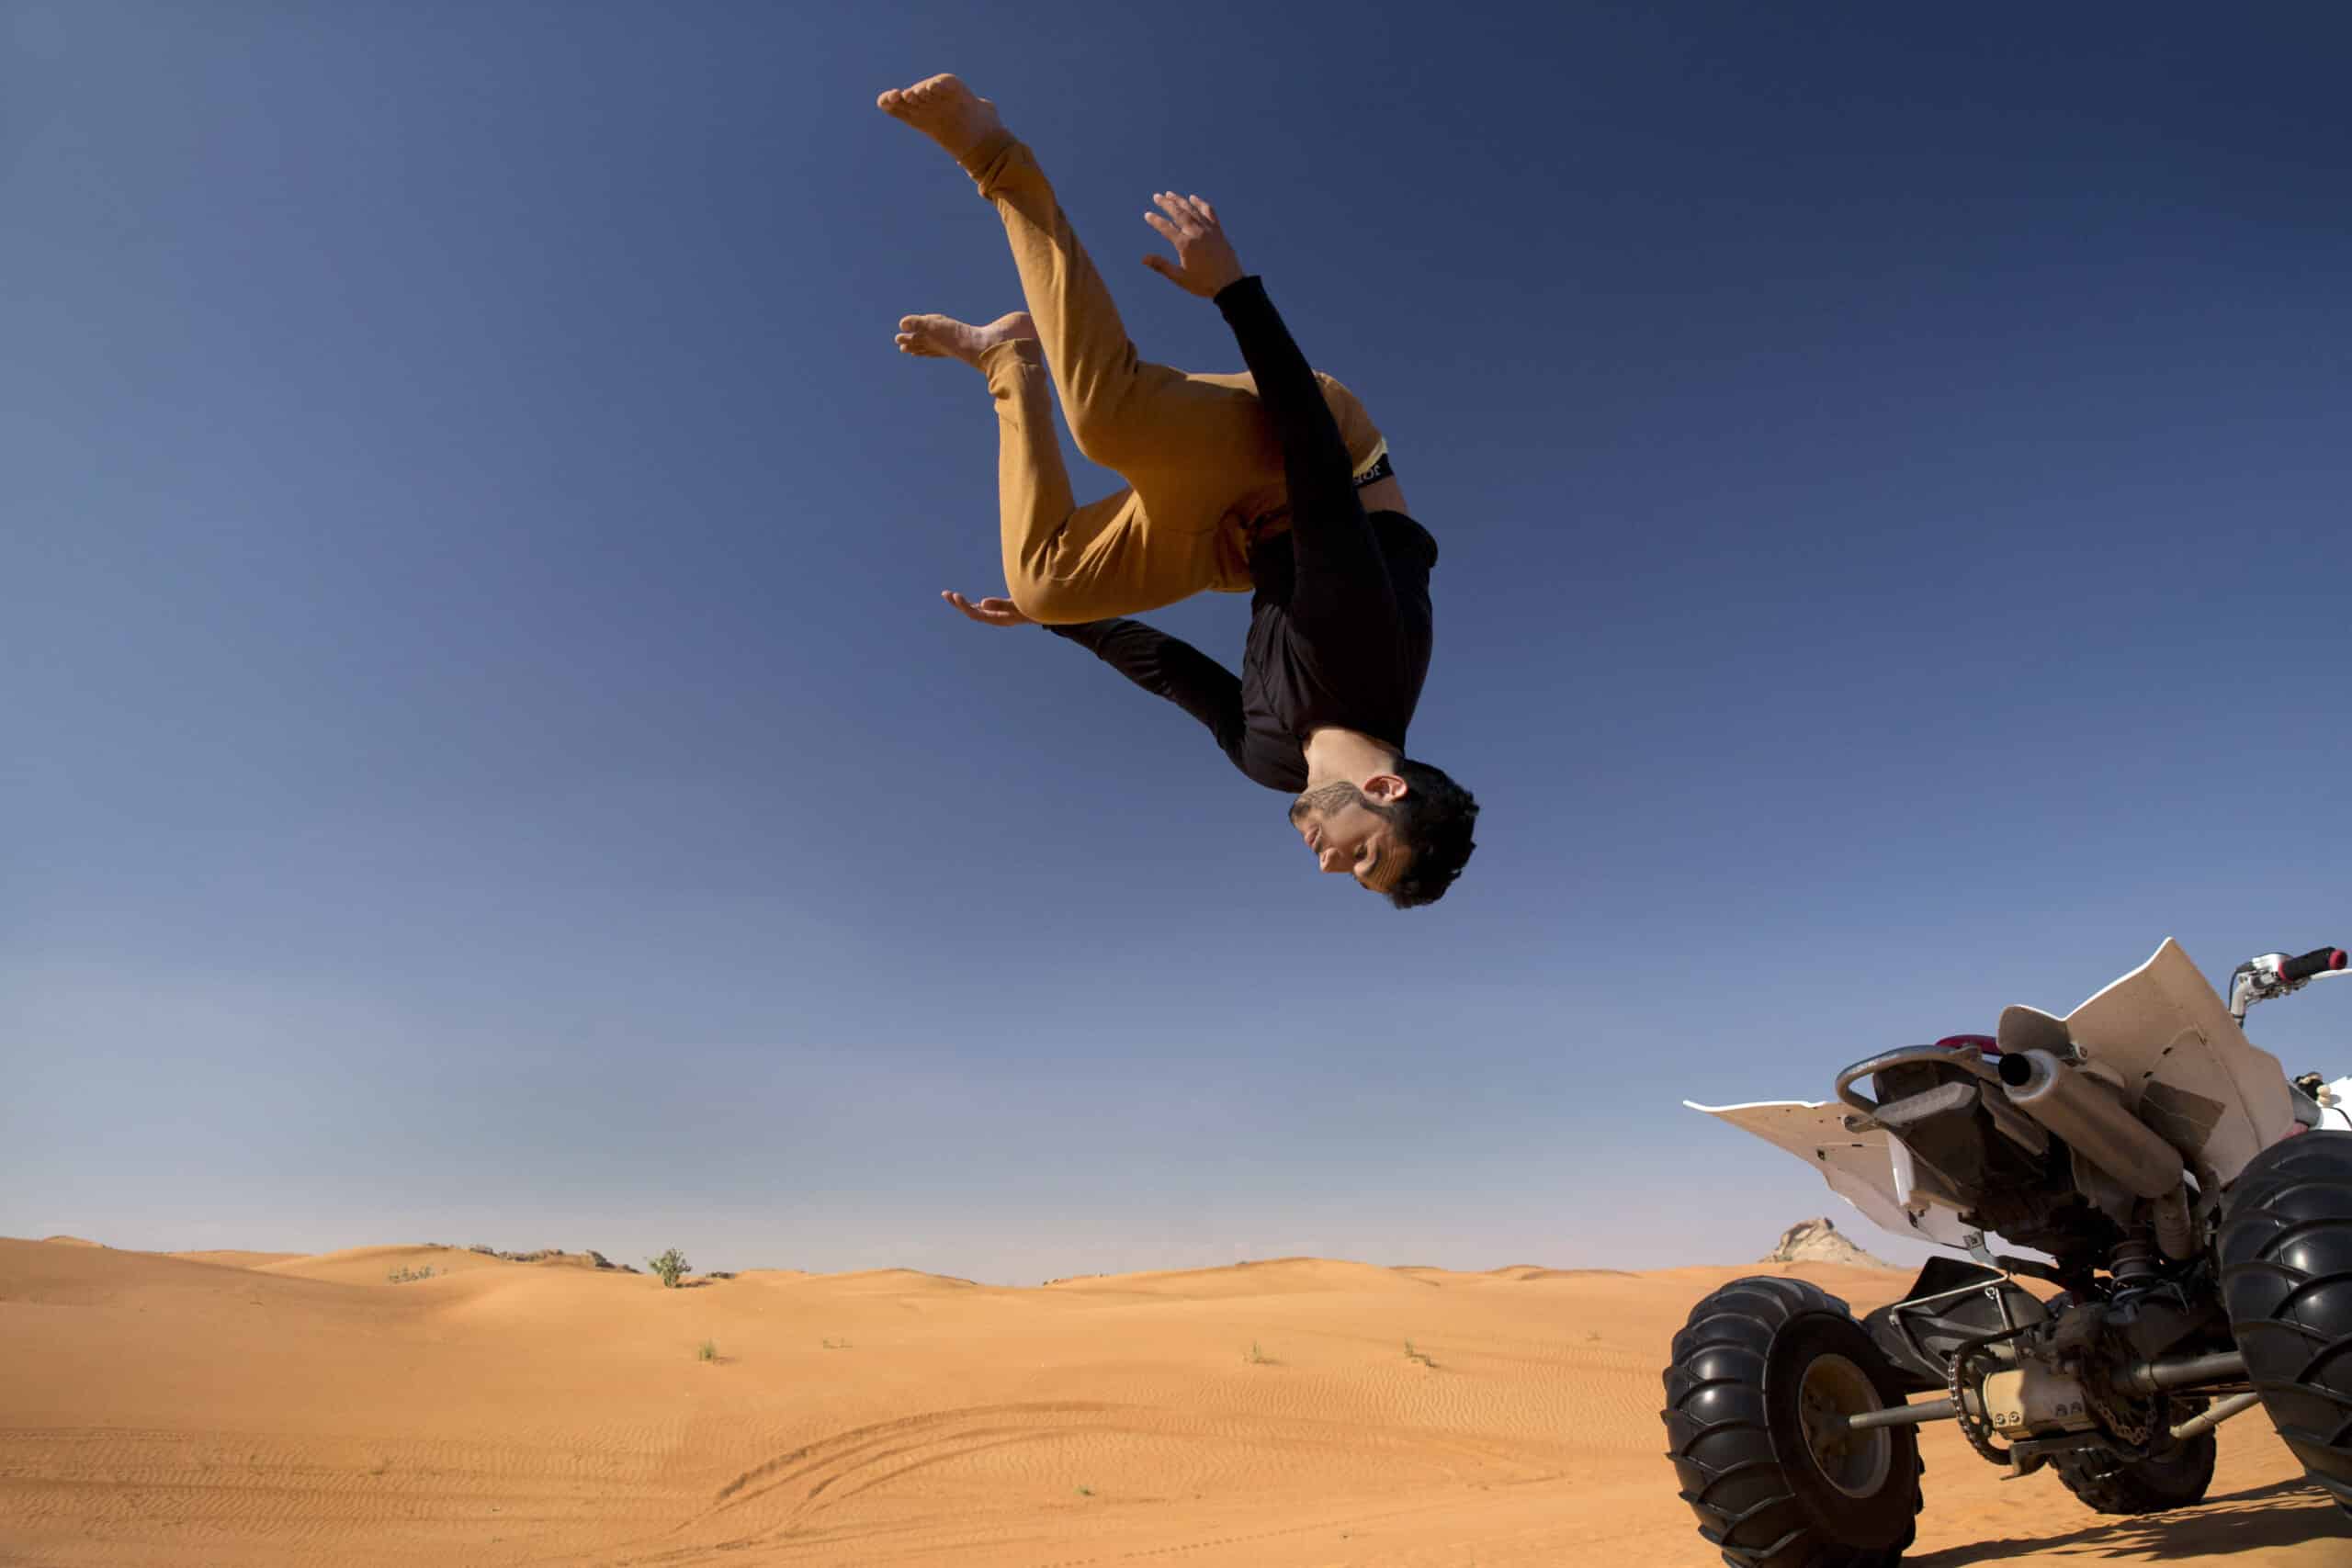 Eine Person in einem gelben Oberteil und einer schwarzen Hose vollführt in einer riesigen Wüstenlandschaft unter einem klaren blauen Himmel einen akrobatischen Saltos über einem Quad. © Fotografie Tomas Rodriguez